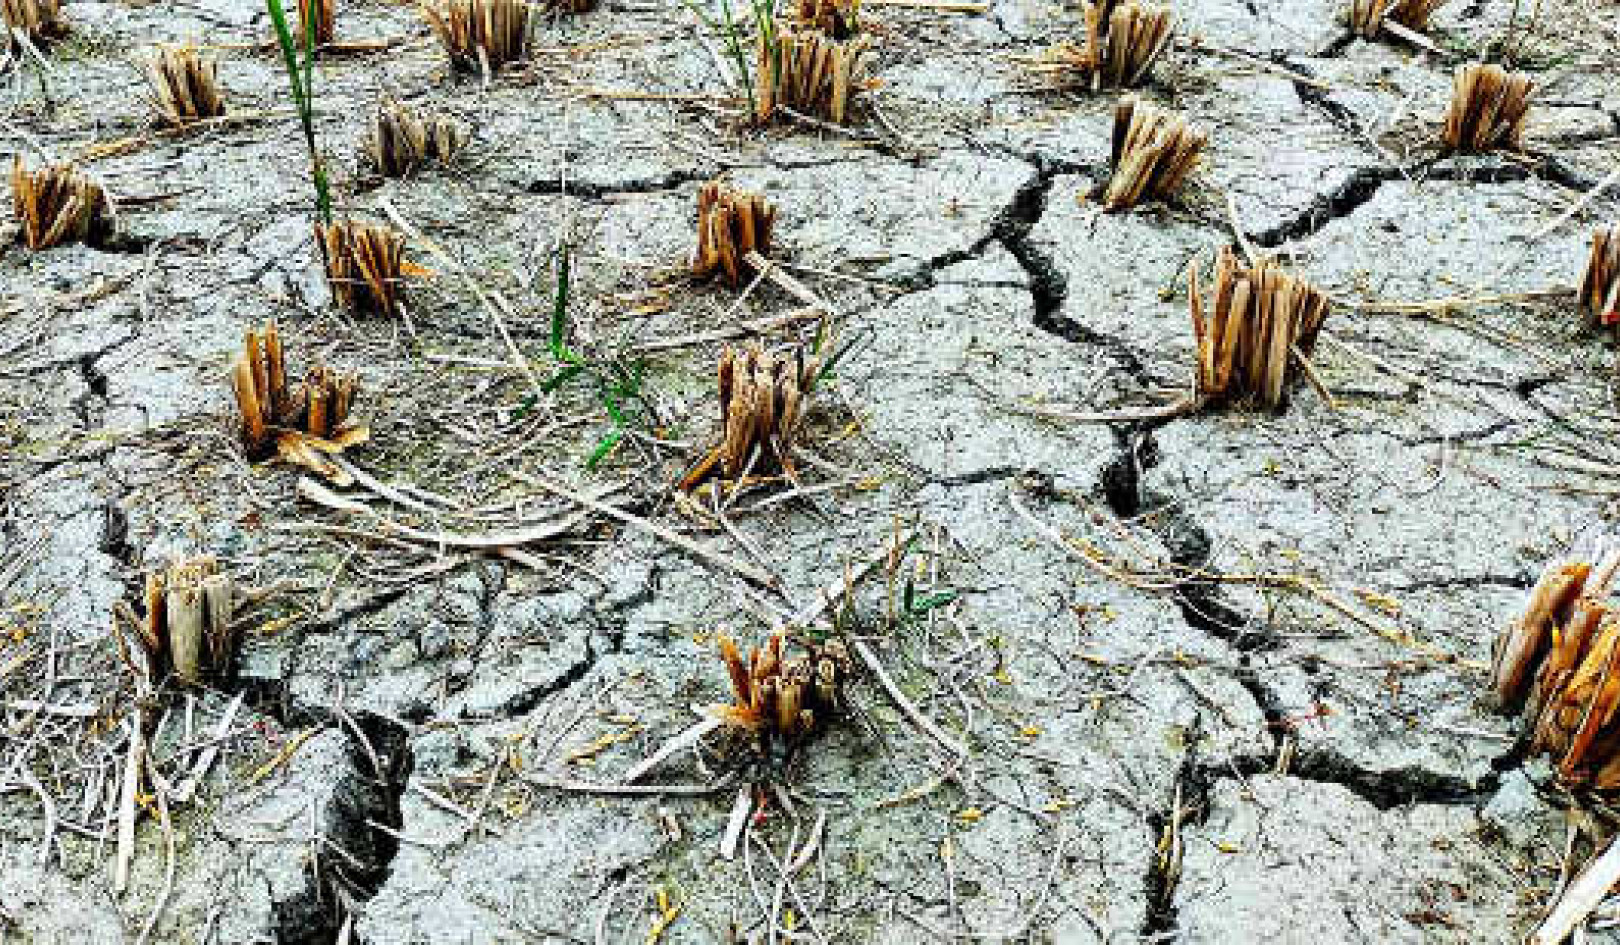 Is het tijd om de definitie van droogte in normaal te veranderen?